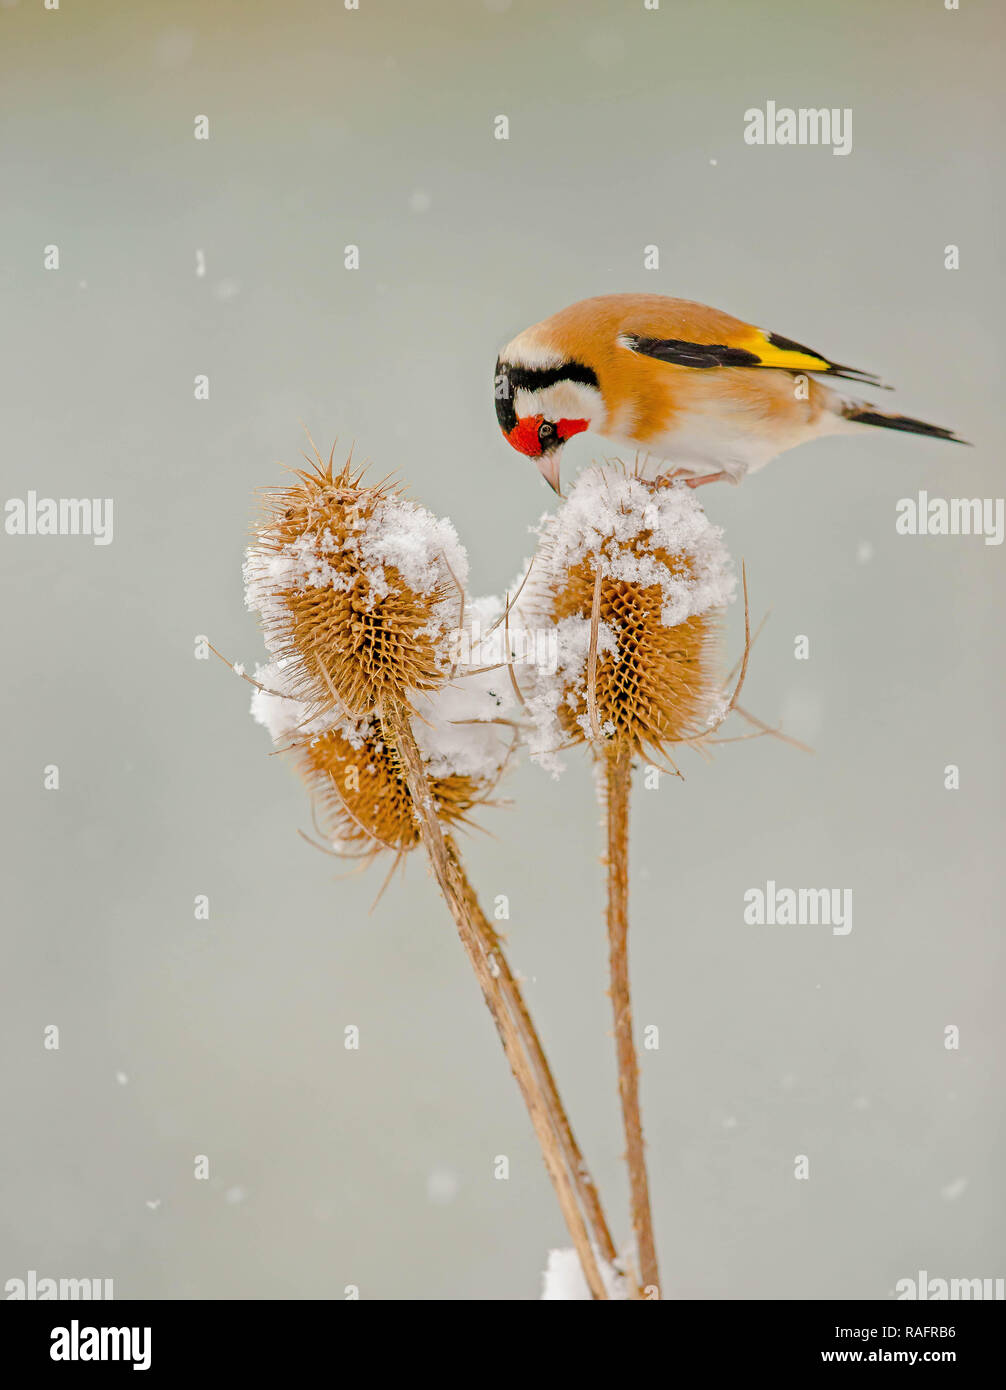 Eine akrobatische Goldfinch Vogel aufgezeichnet wurde Durchführung des Splits, während sie versucht, zwischen zwei karde Pflanzen im Gleichgewicht zu halten. Die amüsante Bilder zeigen die Gehen Stockfoto